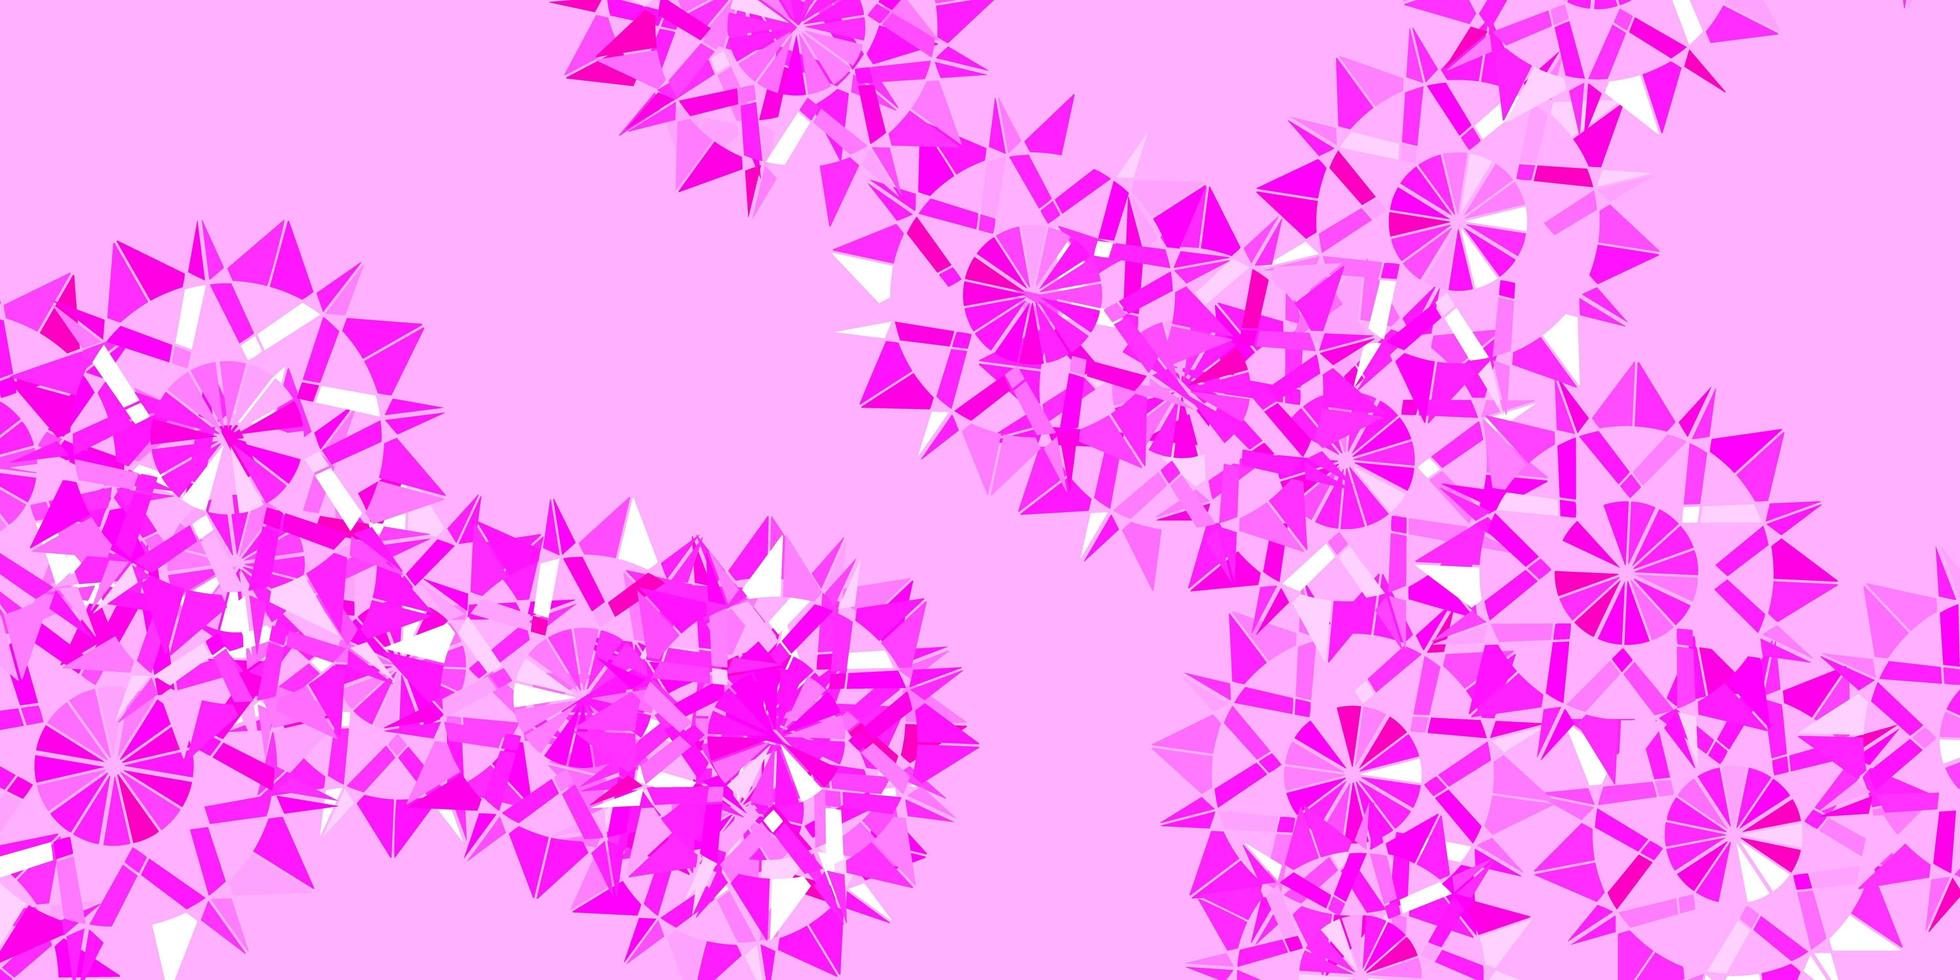 layout de vetor rosa claro com flocos de neve lindos.